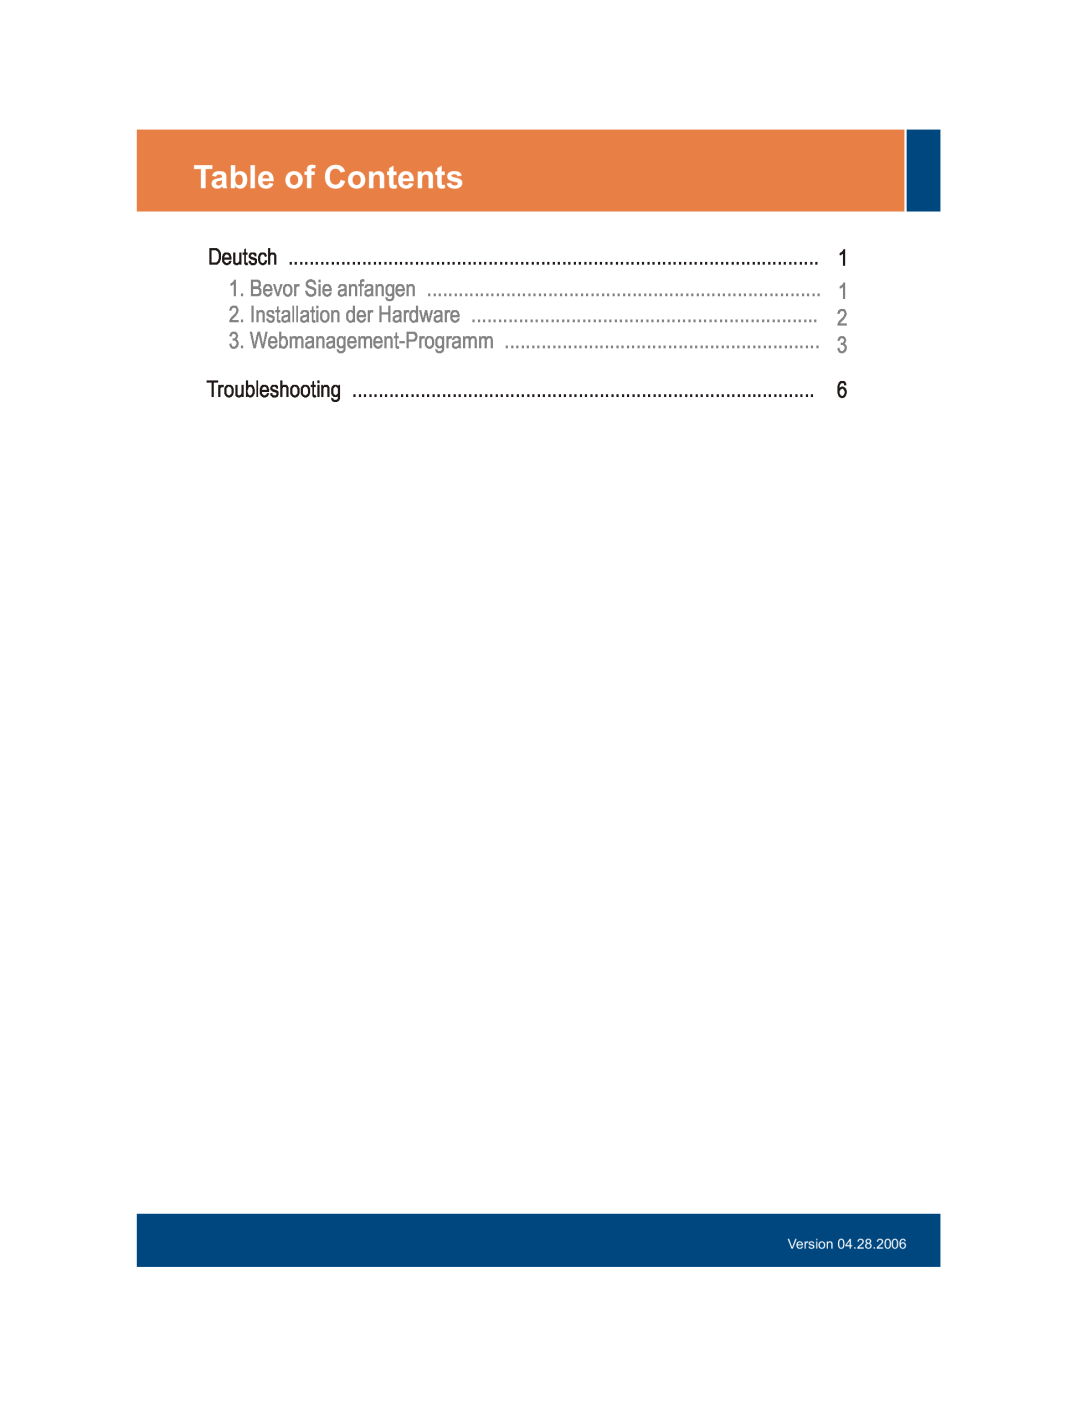 TRENDnet TEG-160WS manual Table of Contents, Bevor Sie anfangen, Installation der Hardware, Webmanagement-Programm, Version 